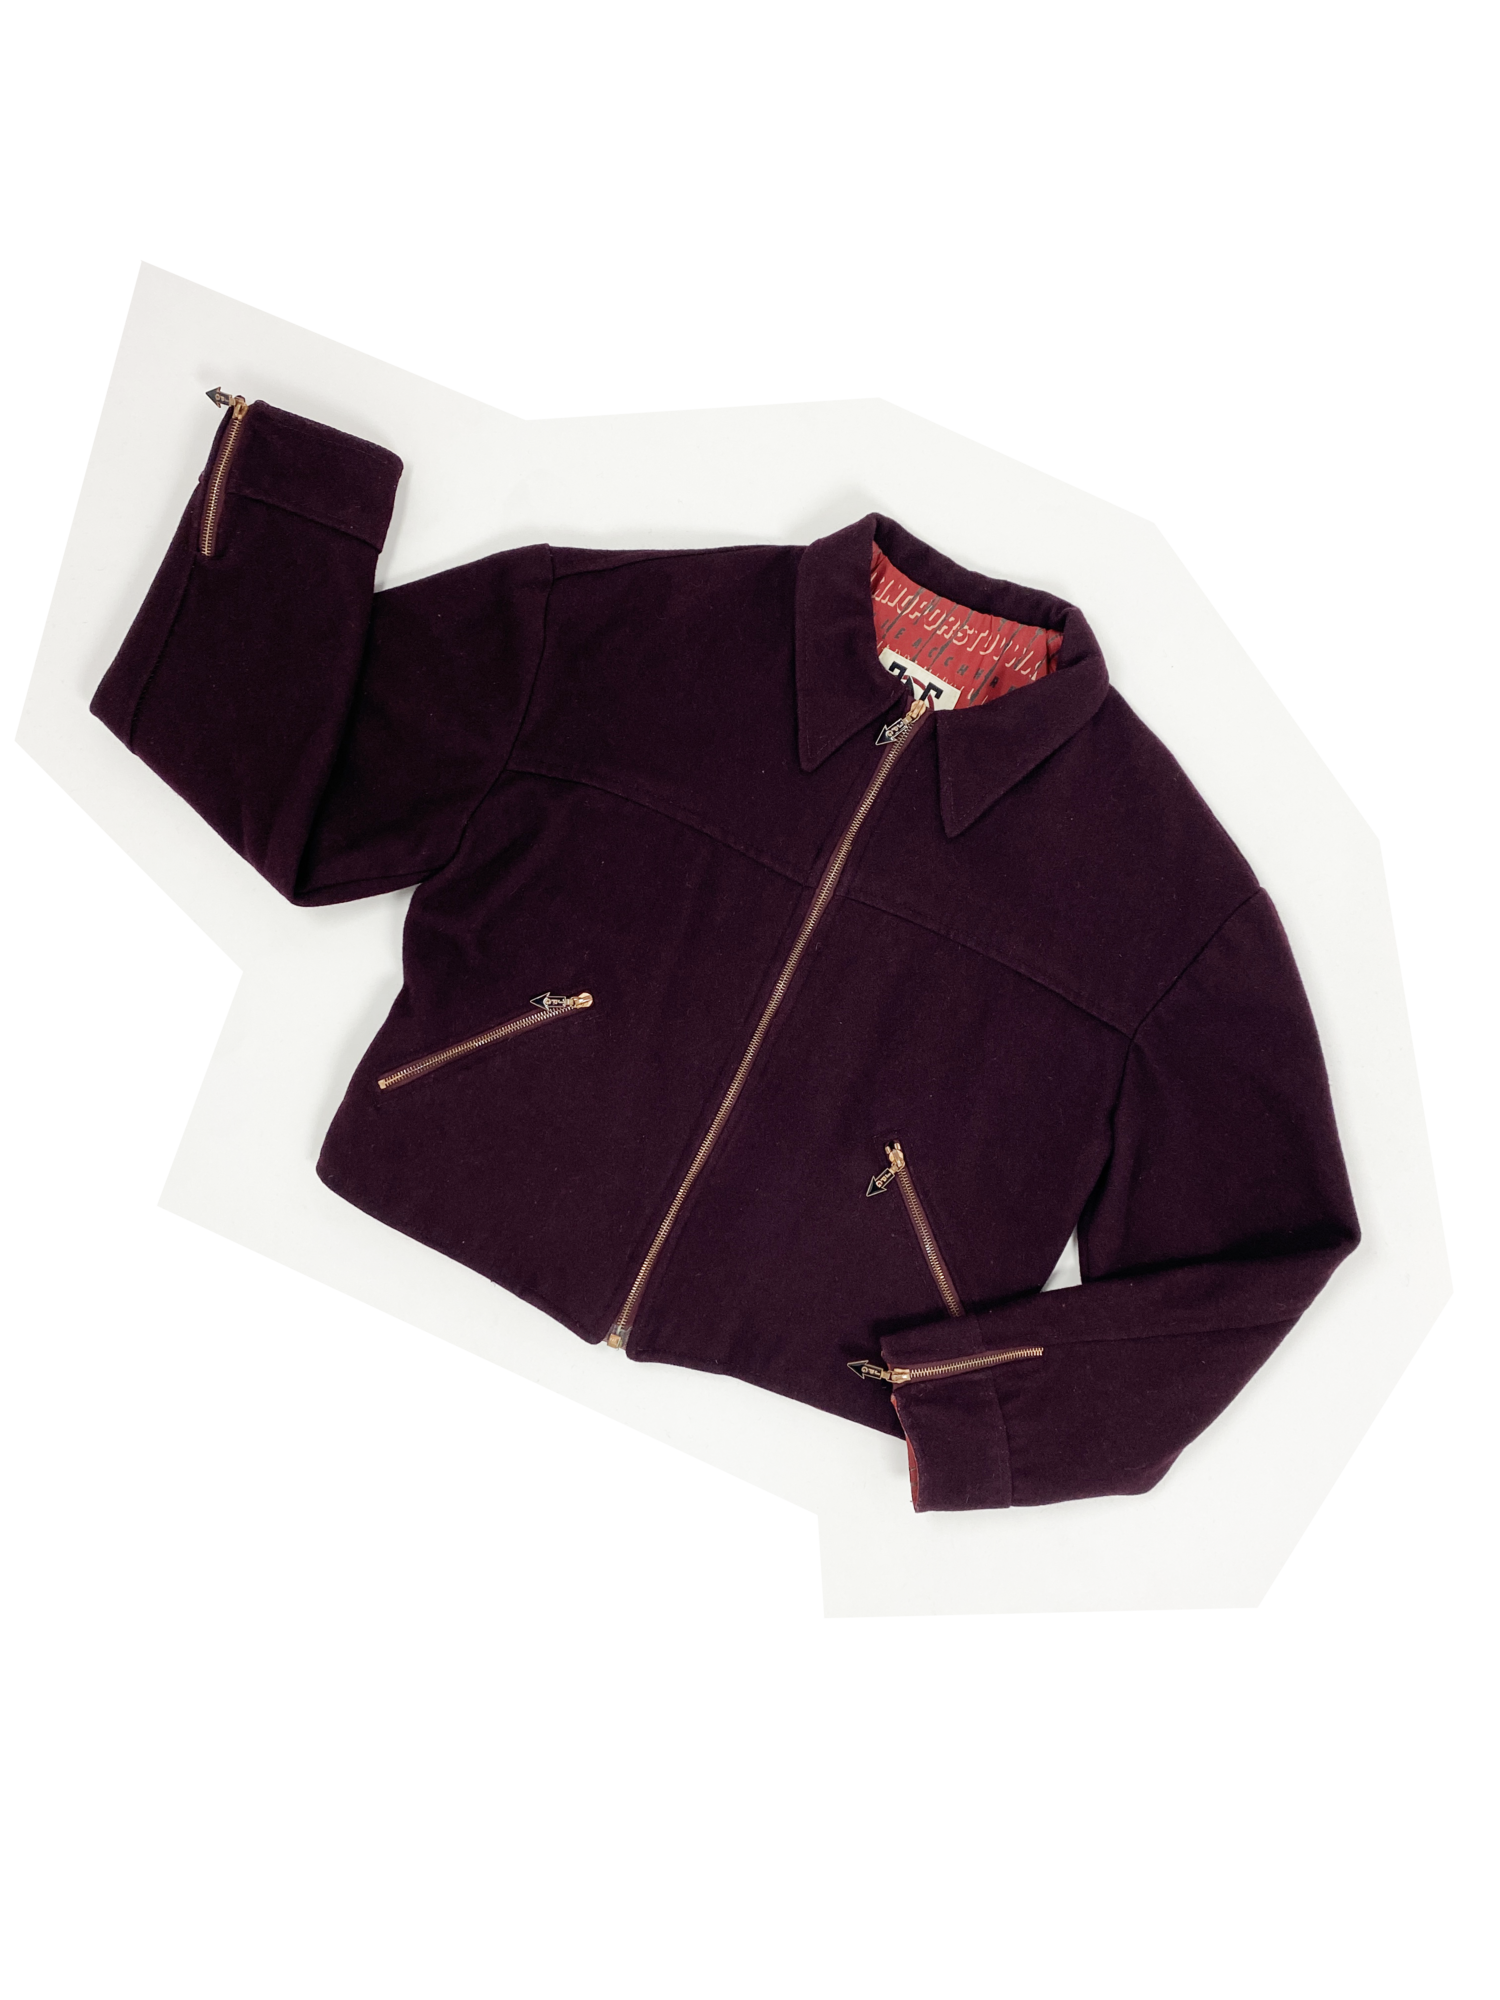 90's Velveteen jacket by GAULTIER